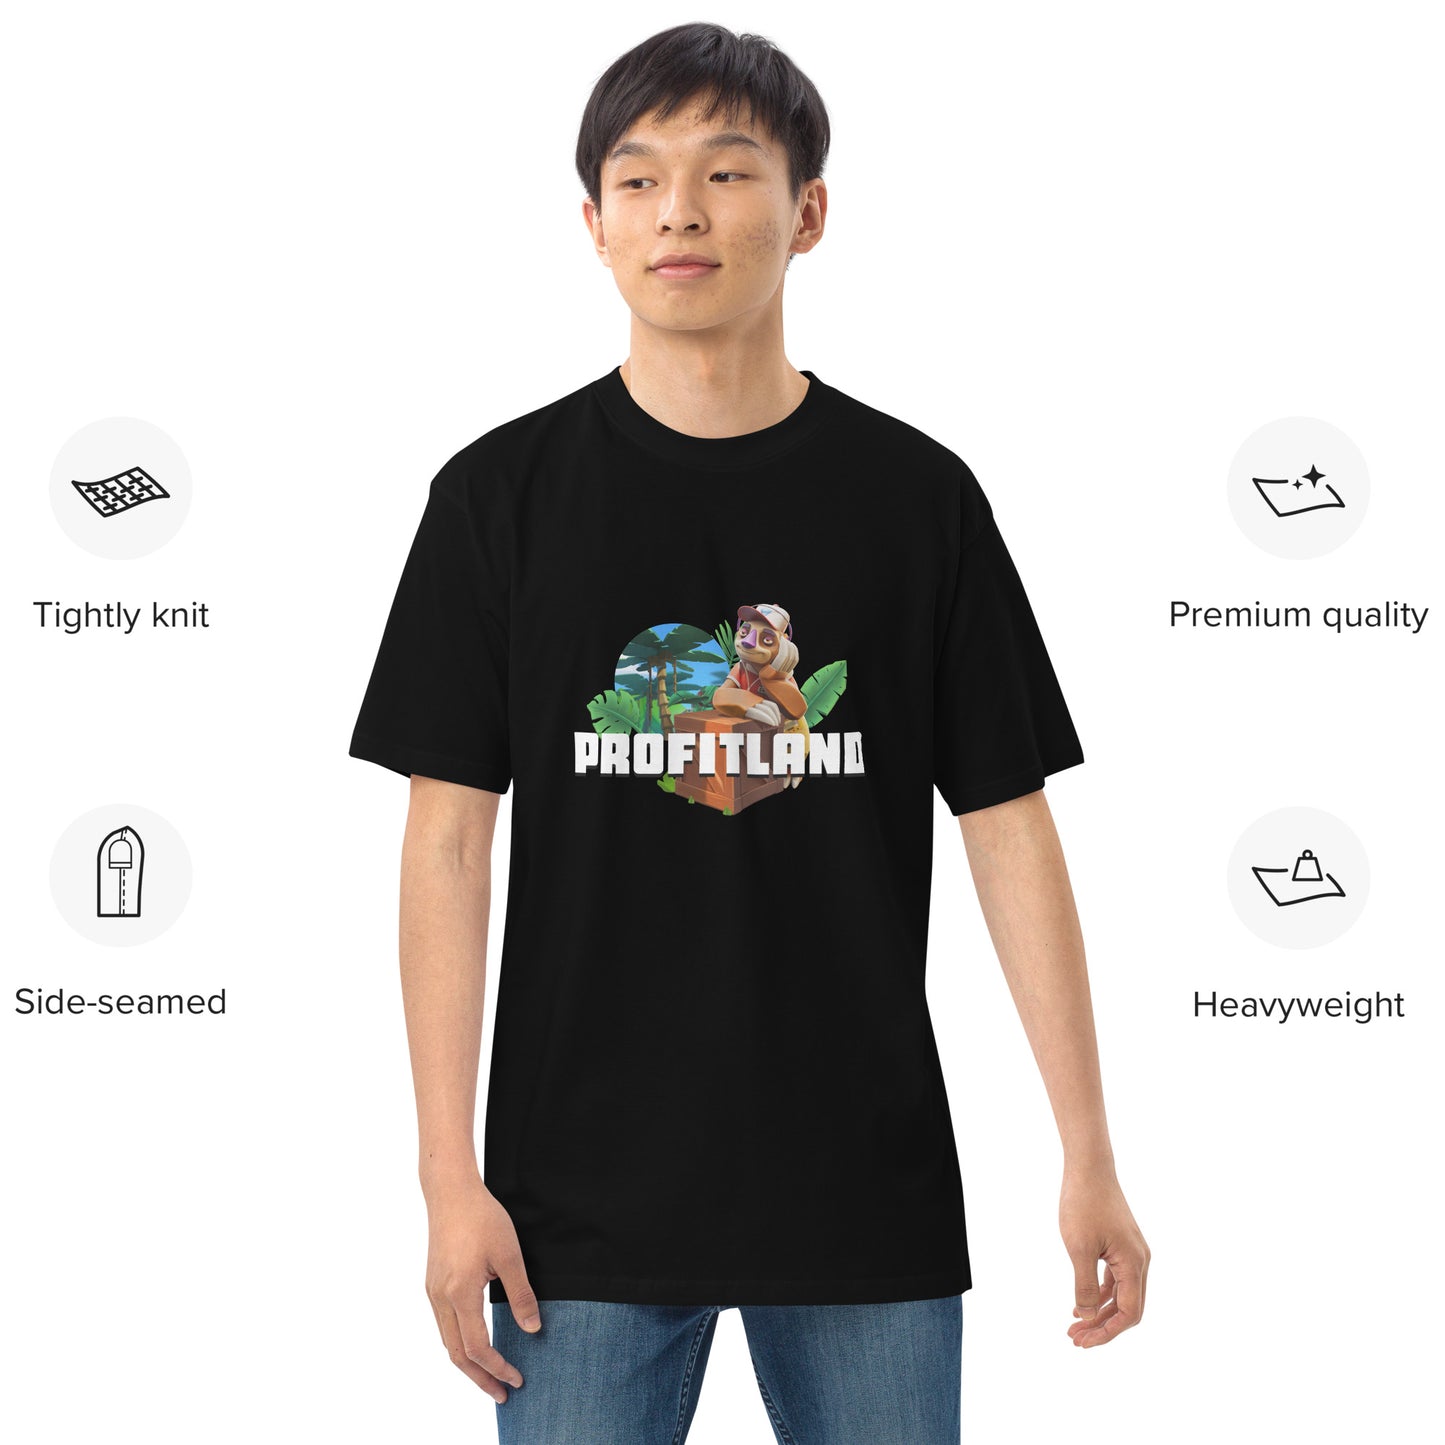 SlothTumble Exclusive T-Shirt